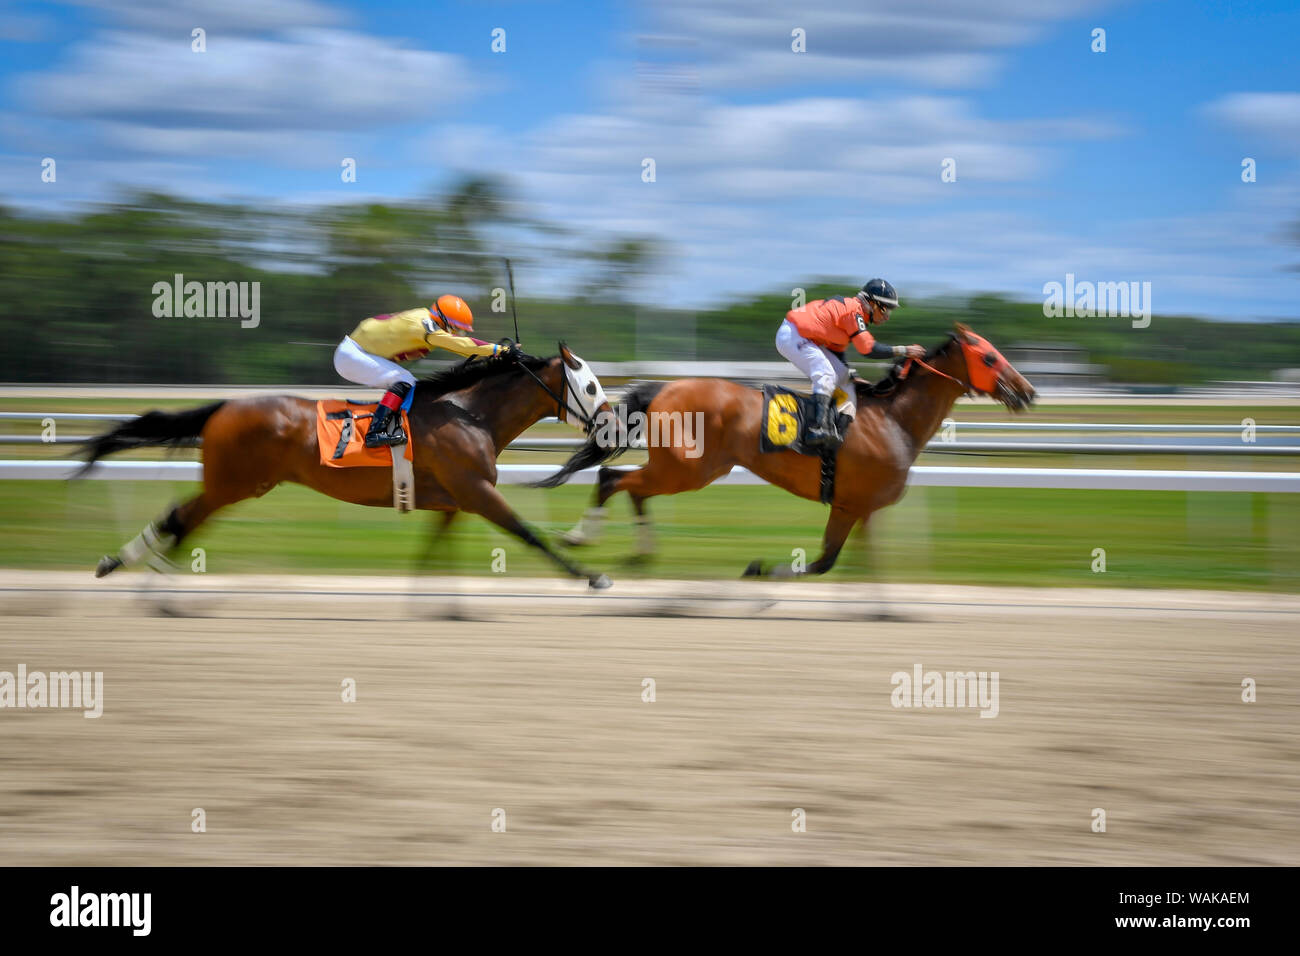 Zwei jockeys drücken ihre Pferde in der letzten Runde des Rennens Stockfoto